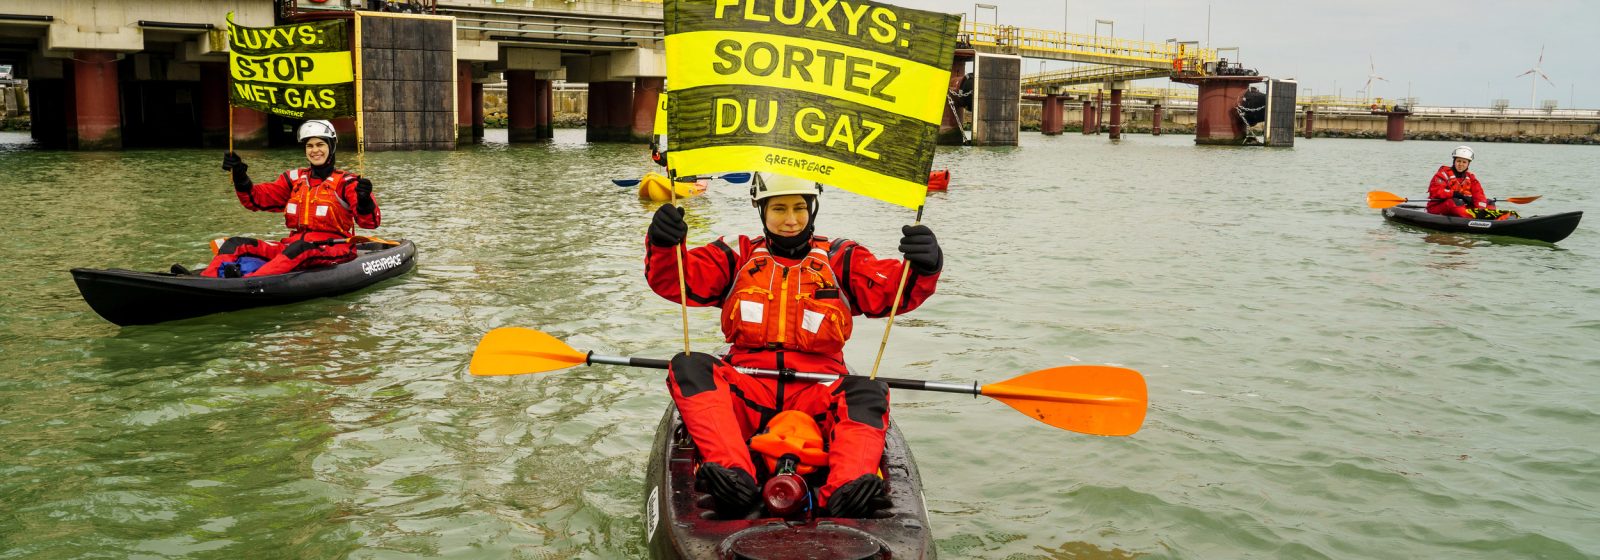 Actie Greenpeace tegen Fluxys LNG in Zeebrugge